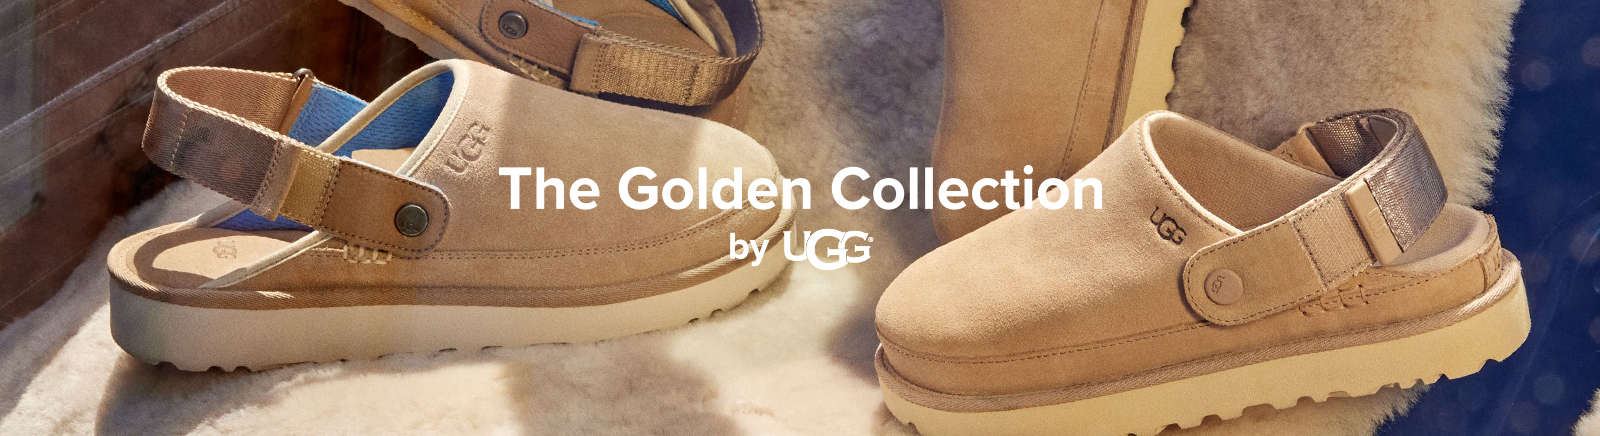 UGG Chelsea Boots für Kinder im Online-Shop von GISY kaufen